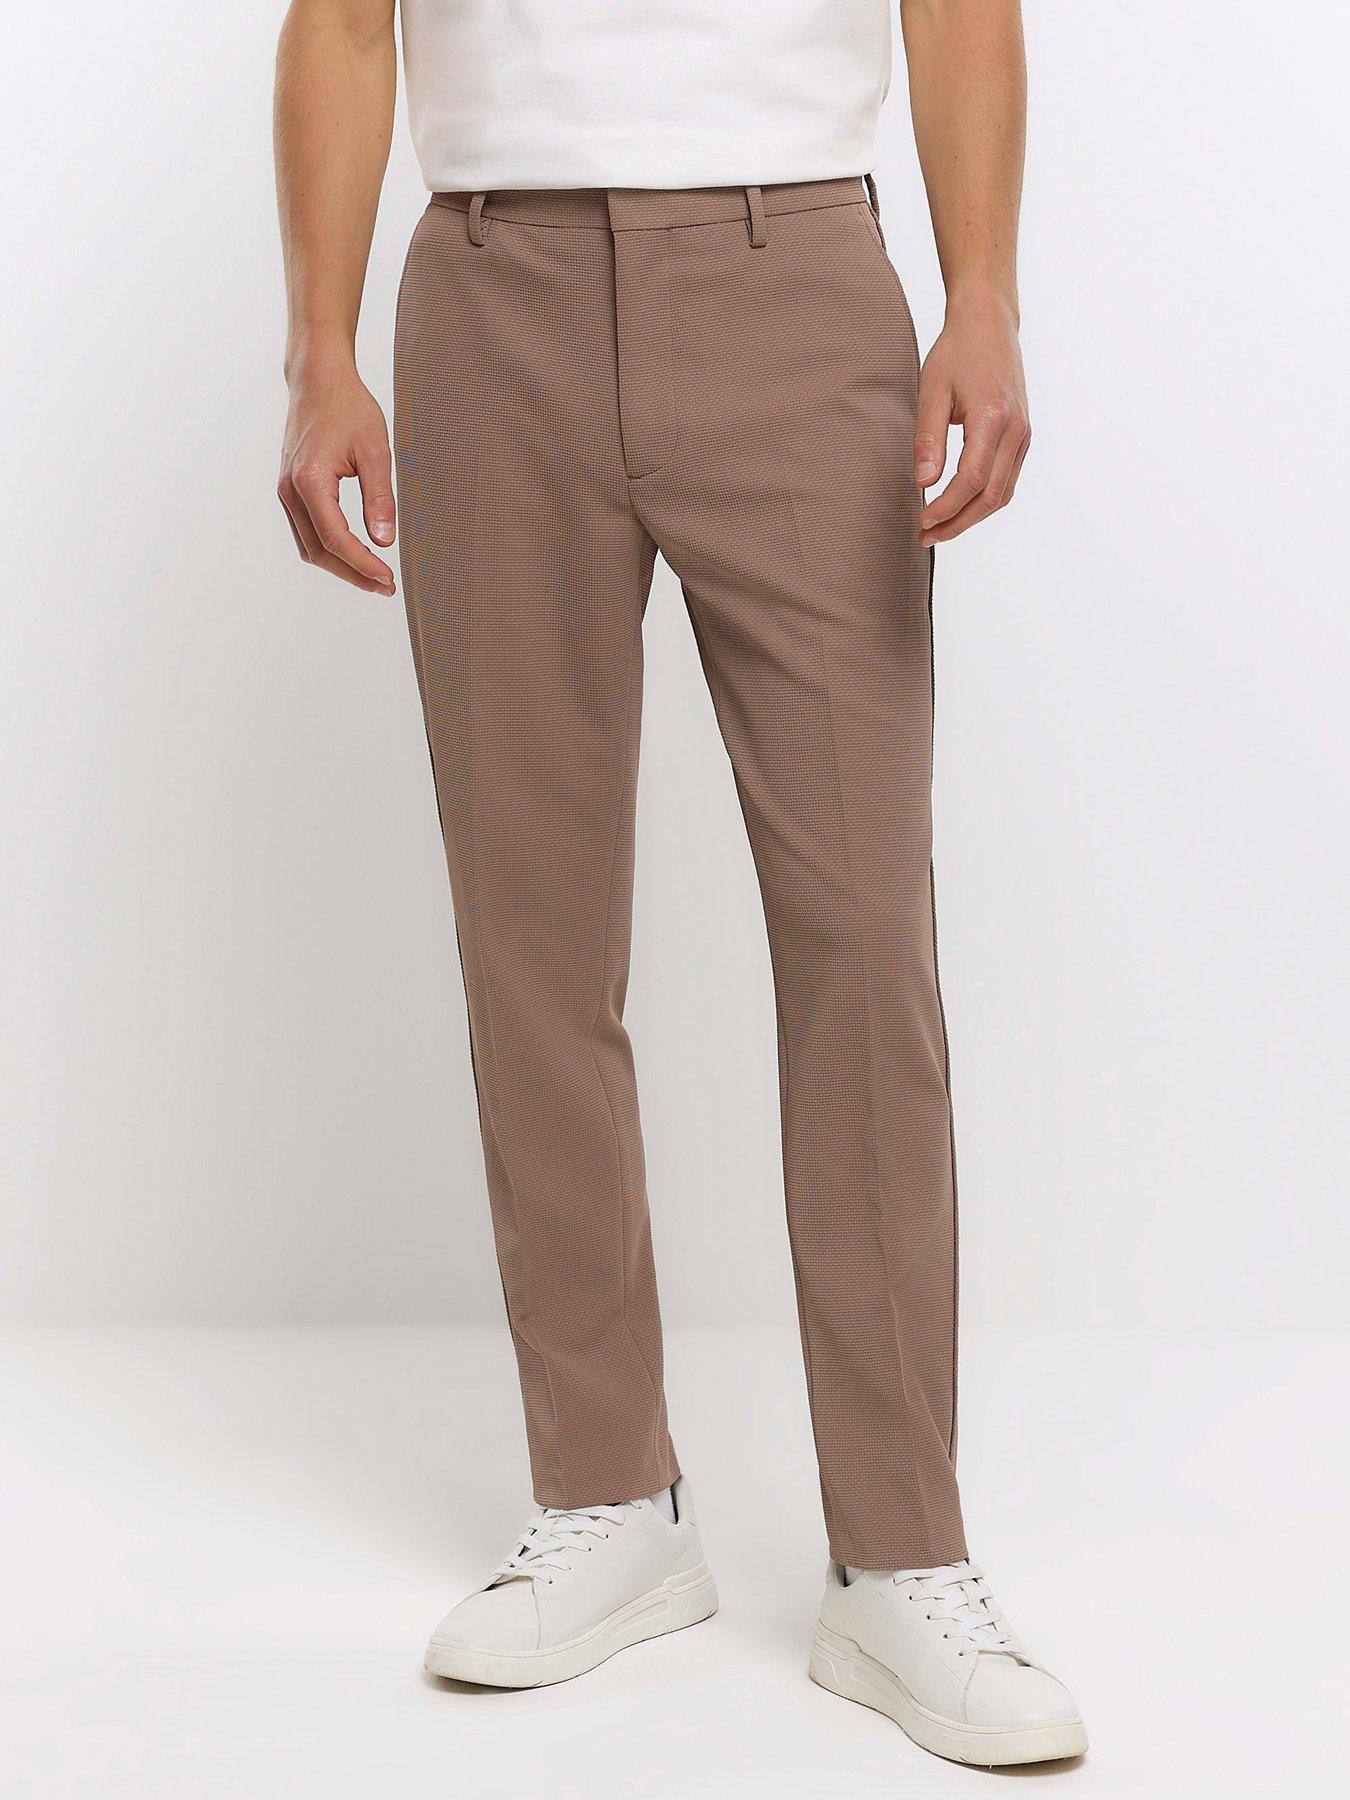 River - Khaki - Suit Pants Ultra Slim Stretch Fit, Suit Pants